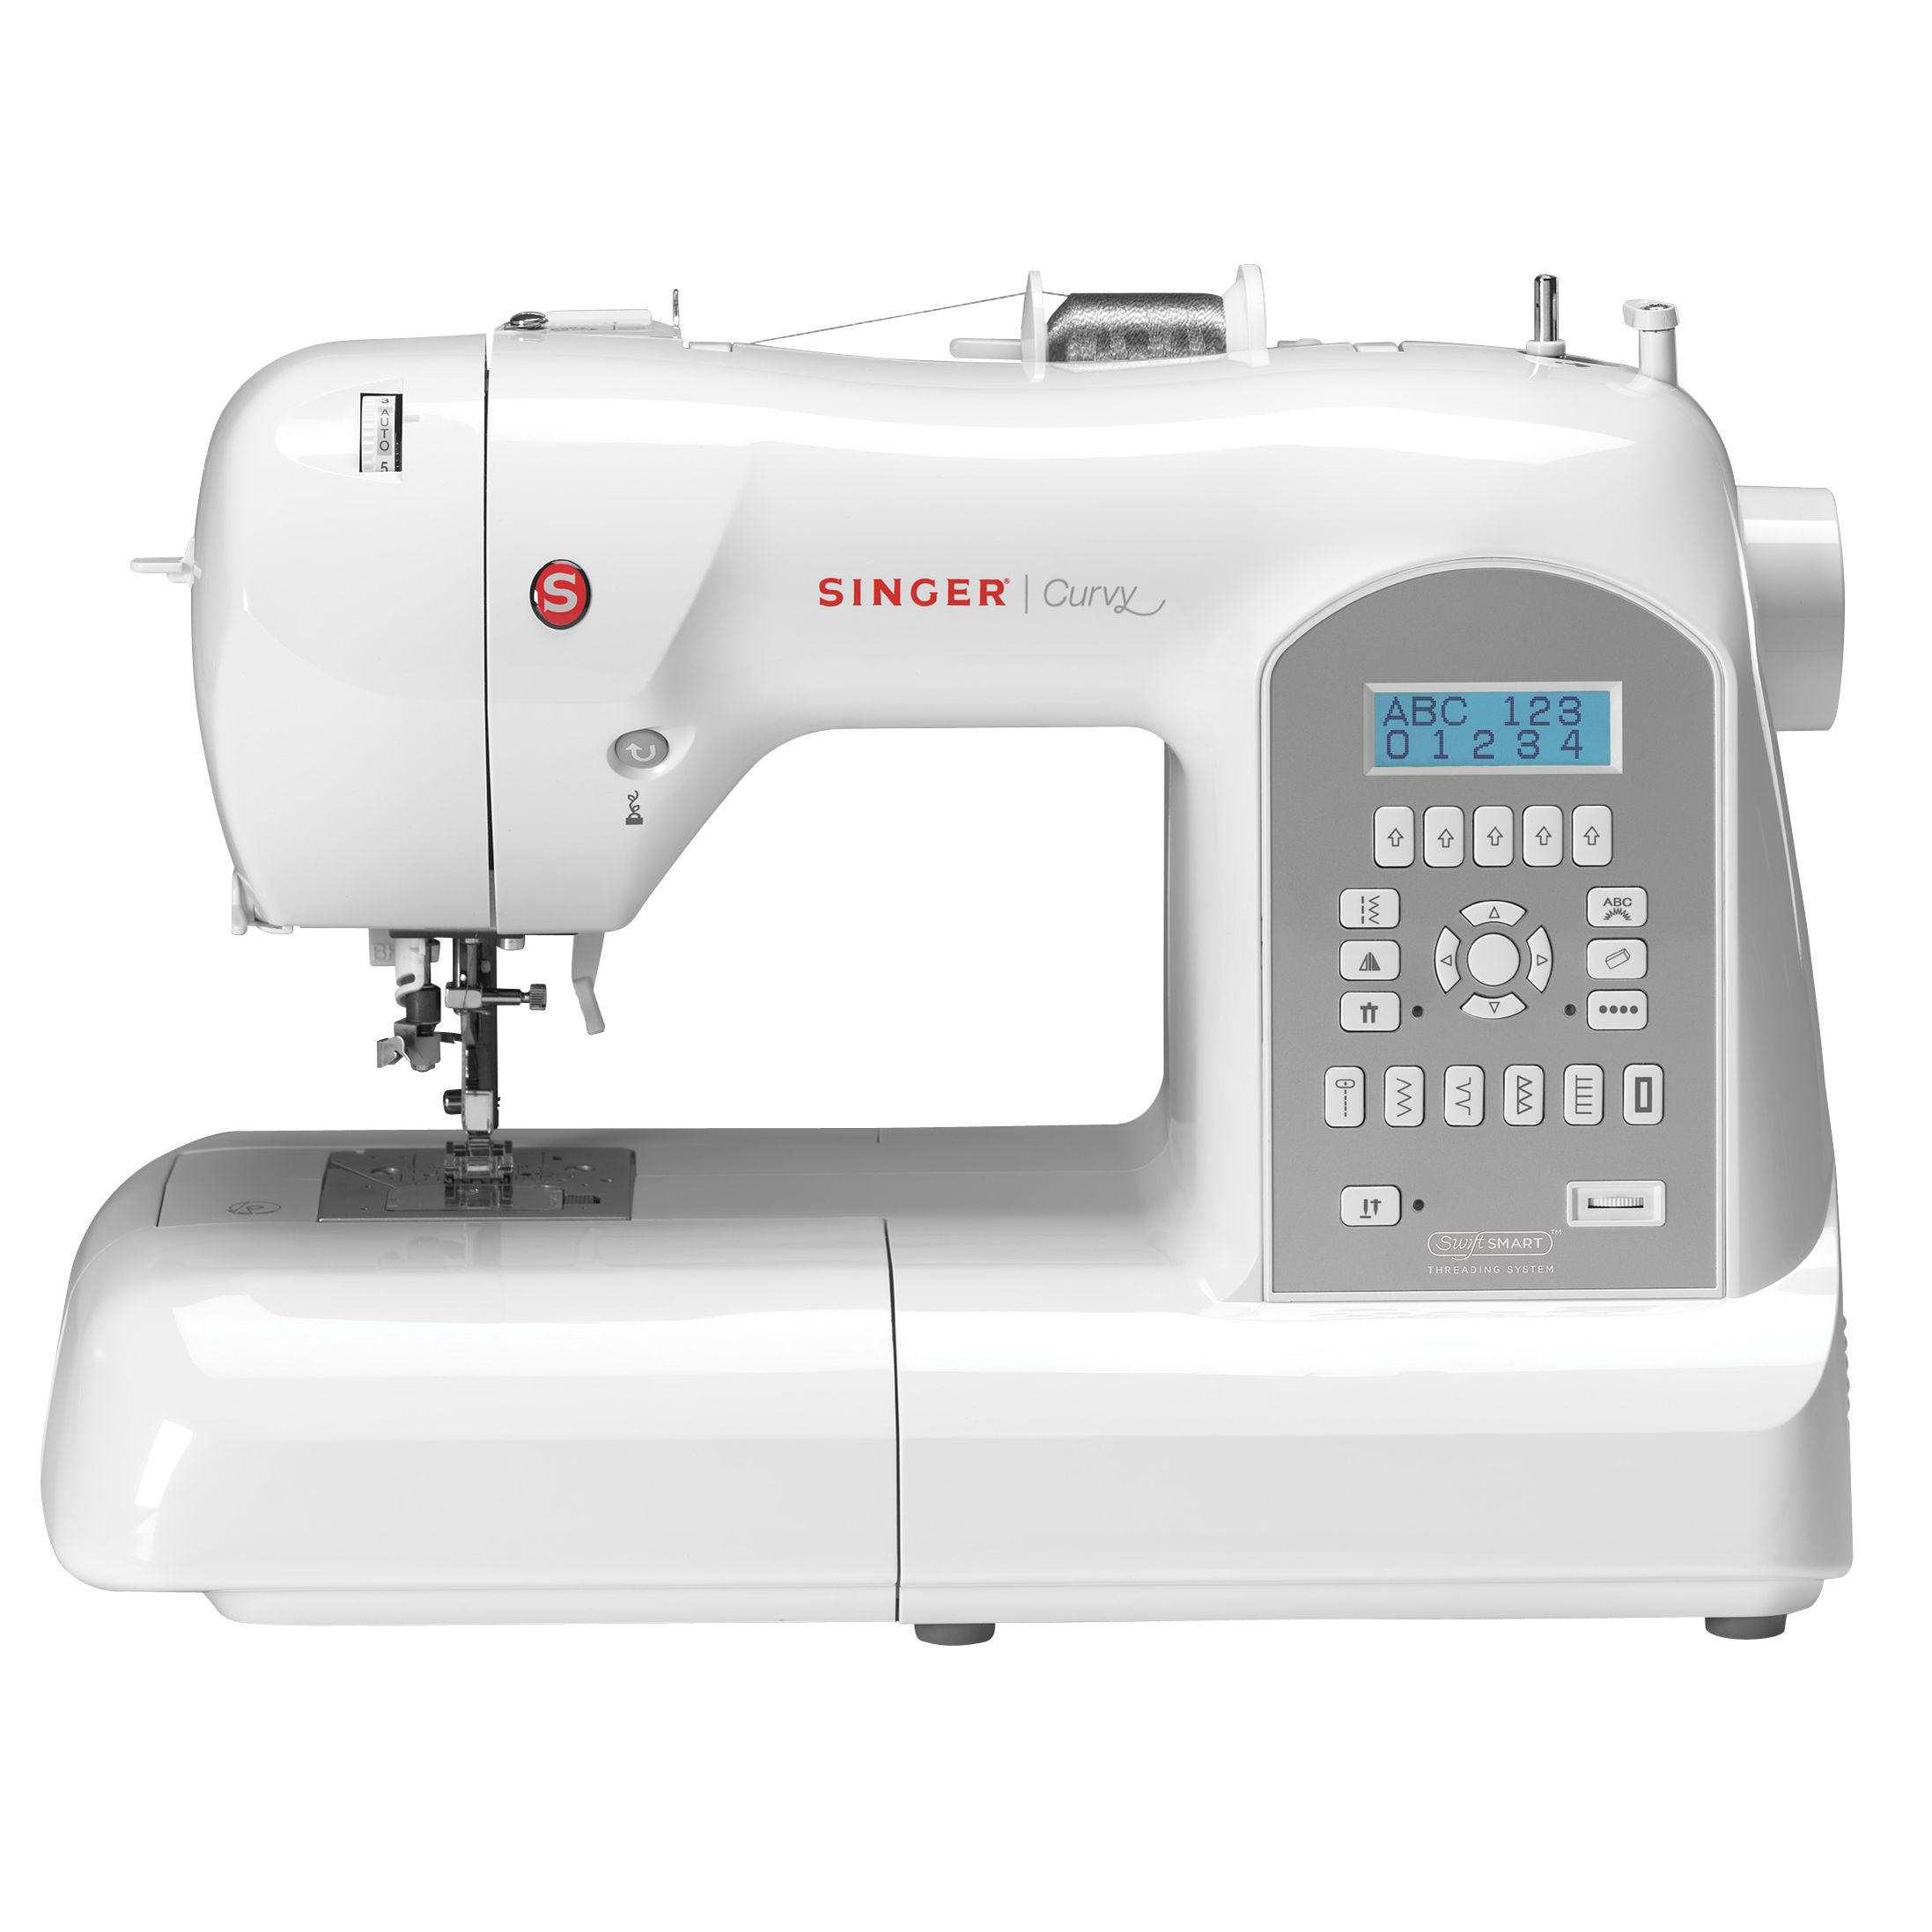 Curvy 8770 Sewing Machine `Curvy 8770